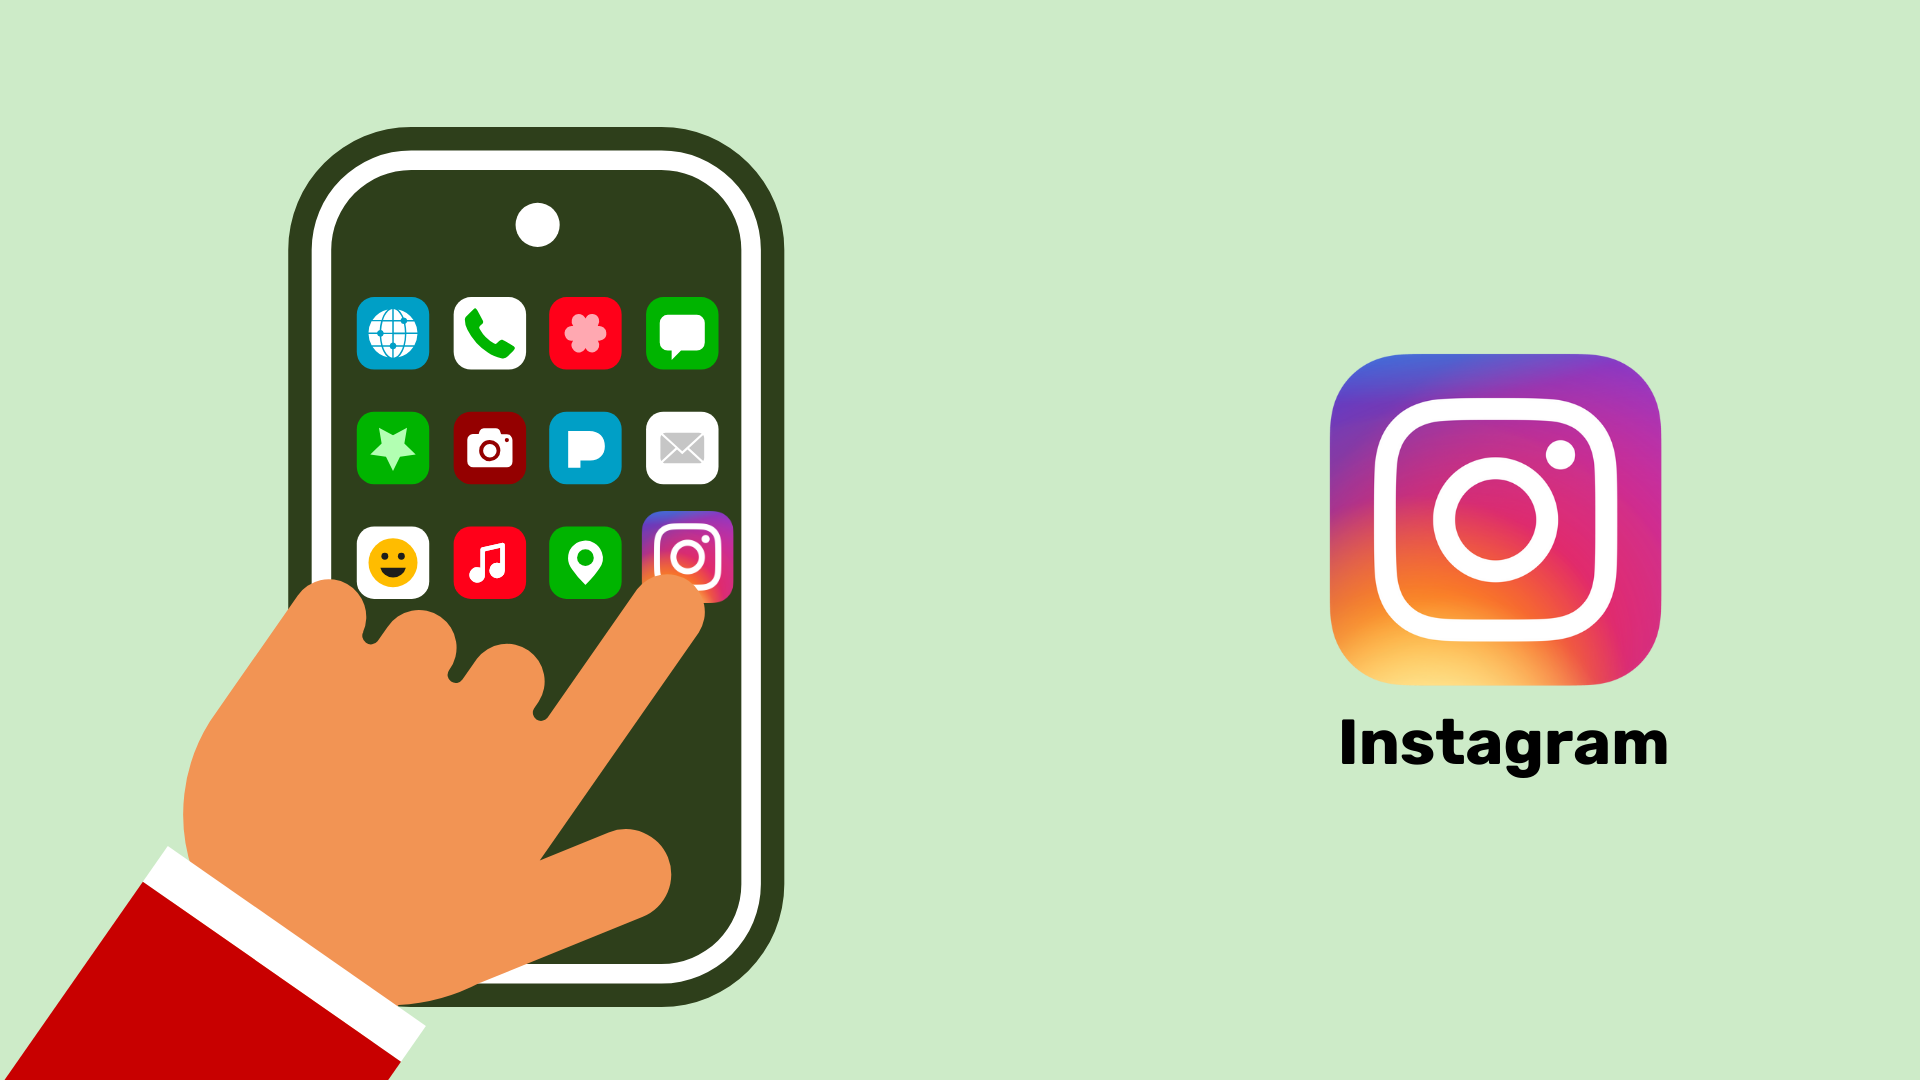 Ein Smartphone mit vielen bunten Apps. Eine Hand tippt auf das Instagram Symbol. Neben dem Bild ist das Instagram Symbol ein zweites Mal in größer dargestellt.